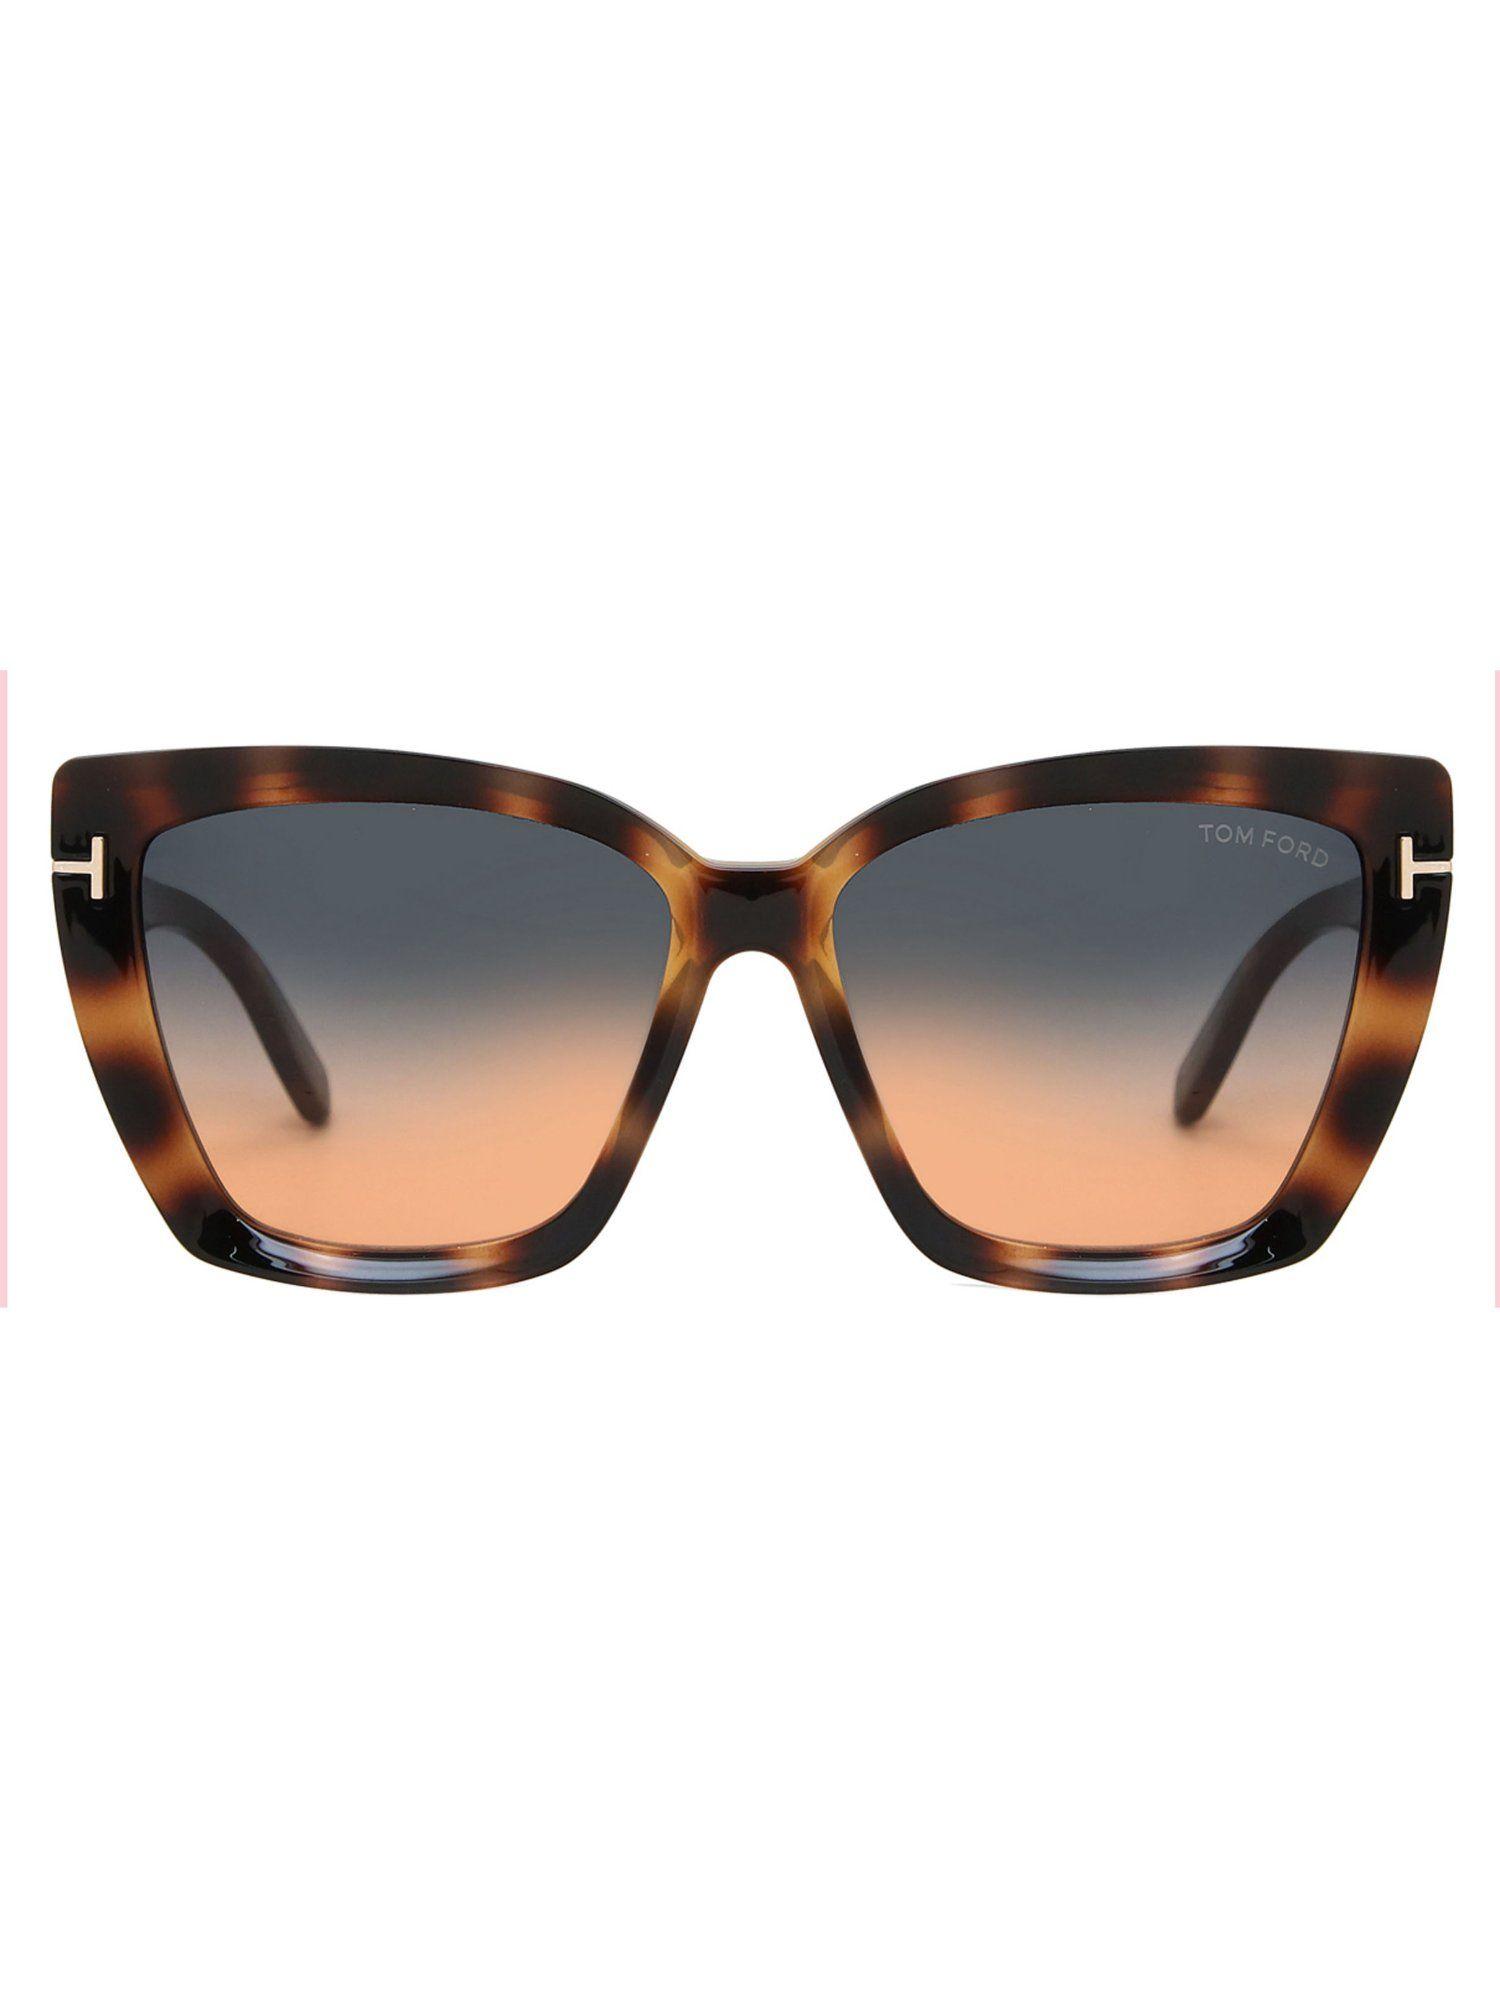 tom ford ft09205753p scarlet-02 cat eye sunglasses for women multi-color (57)